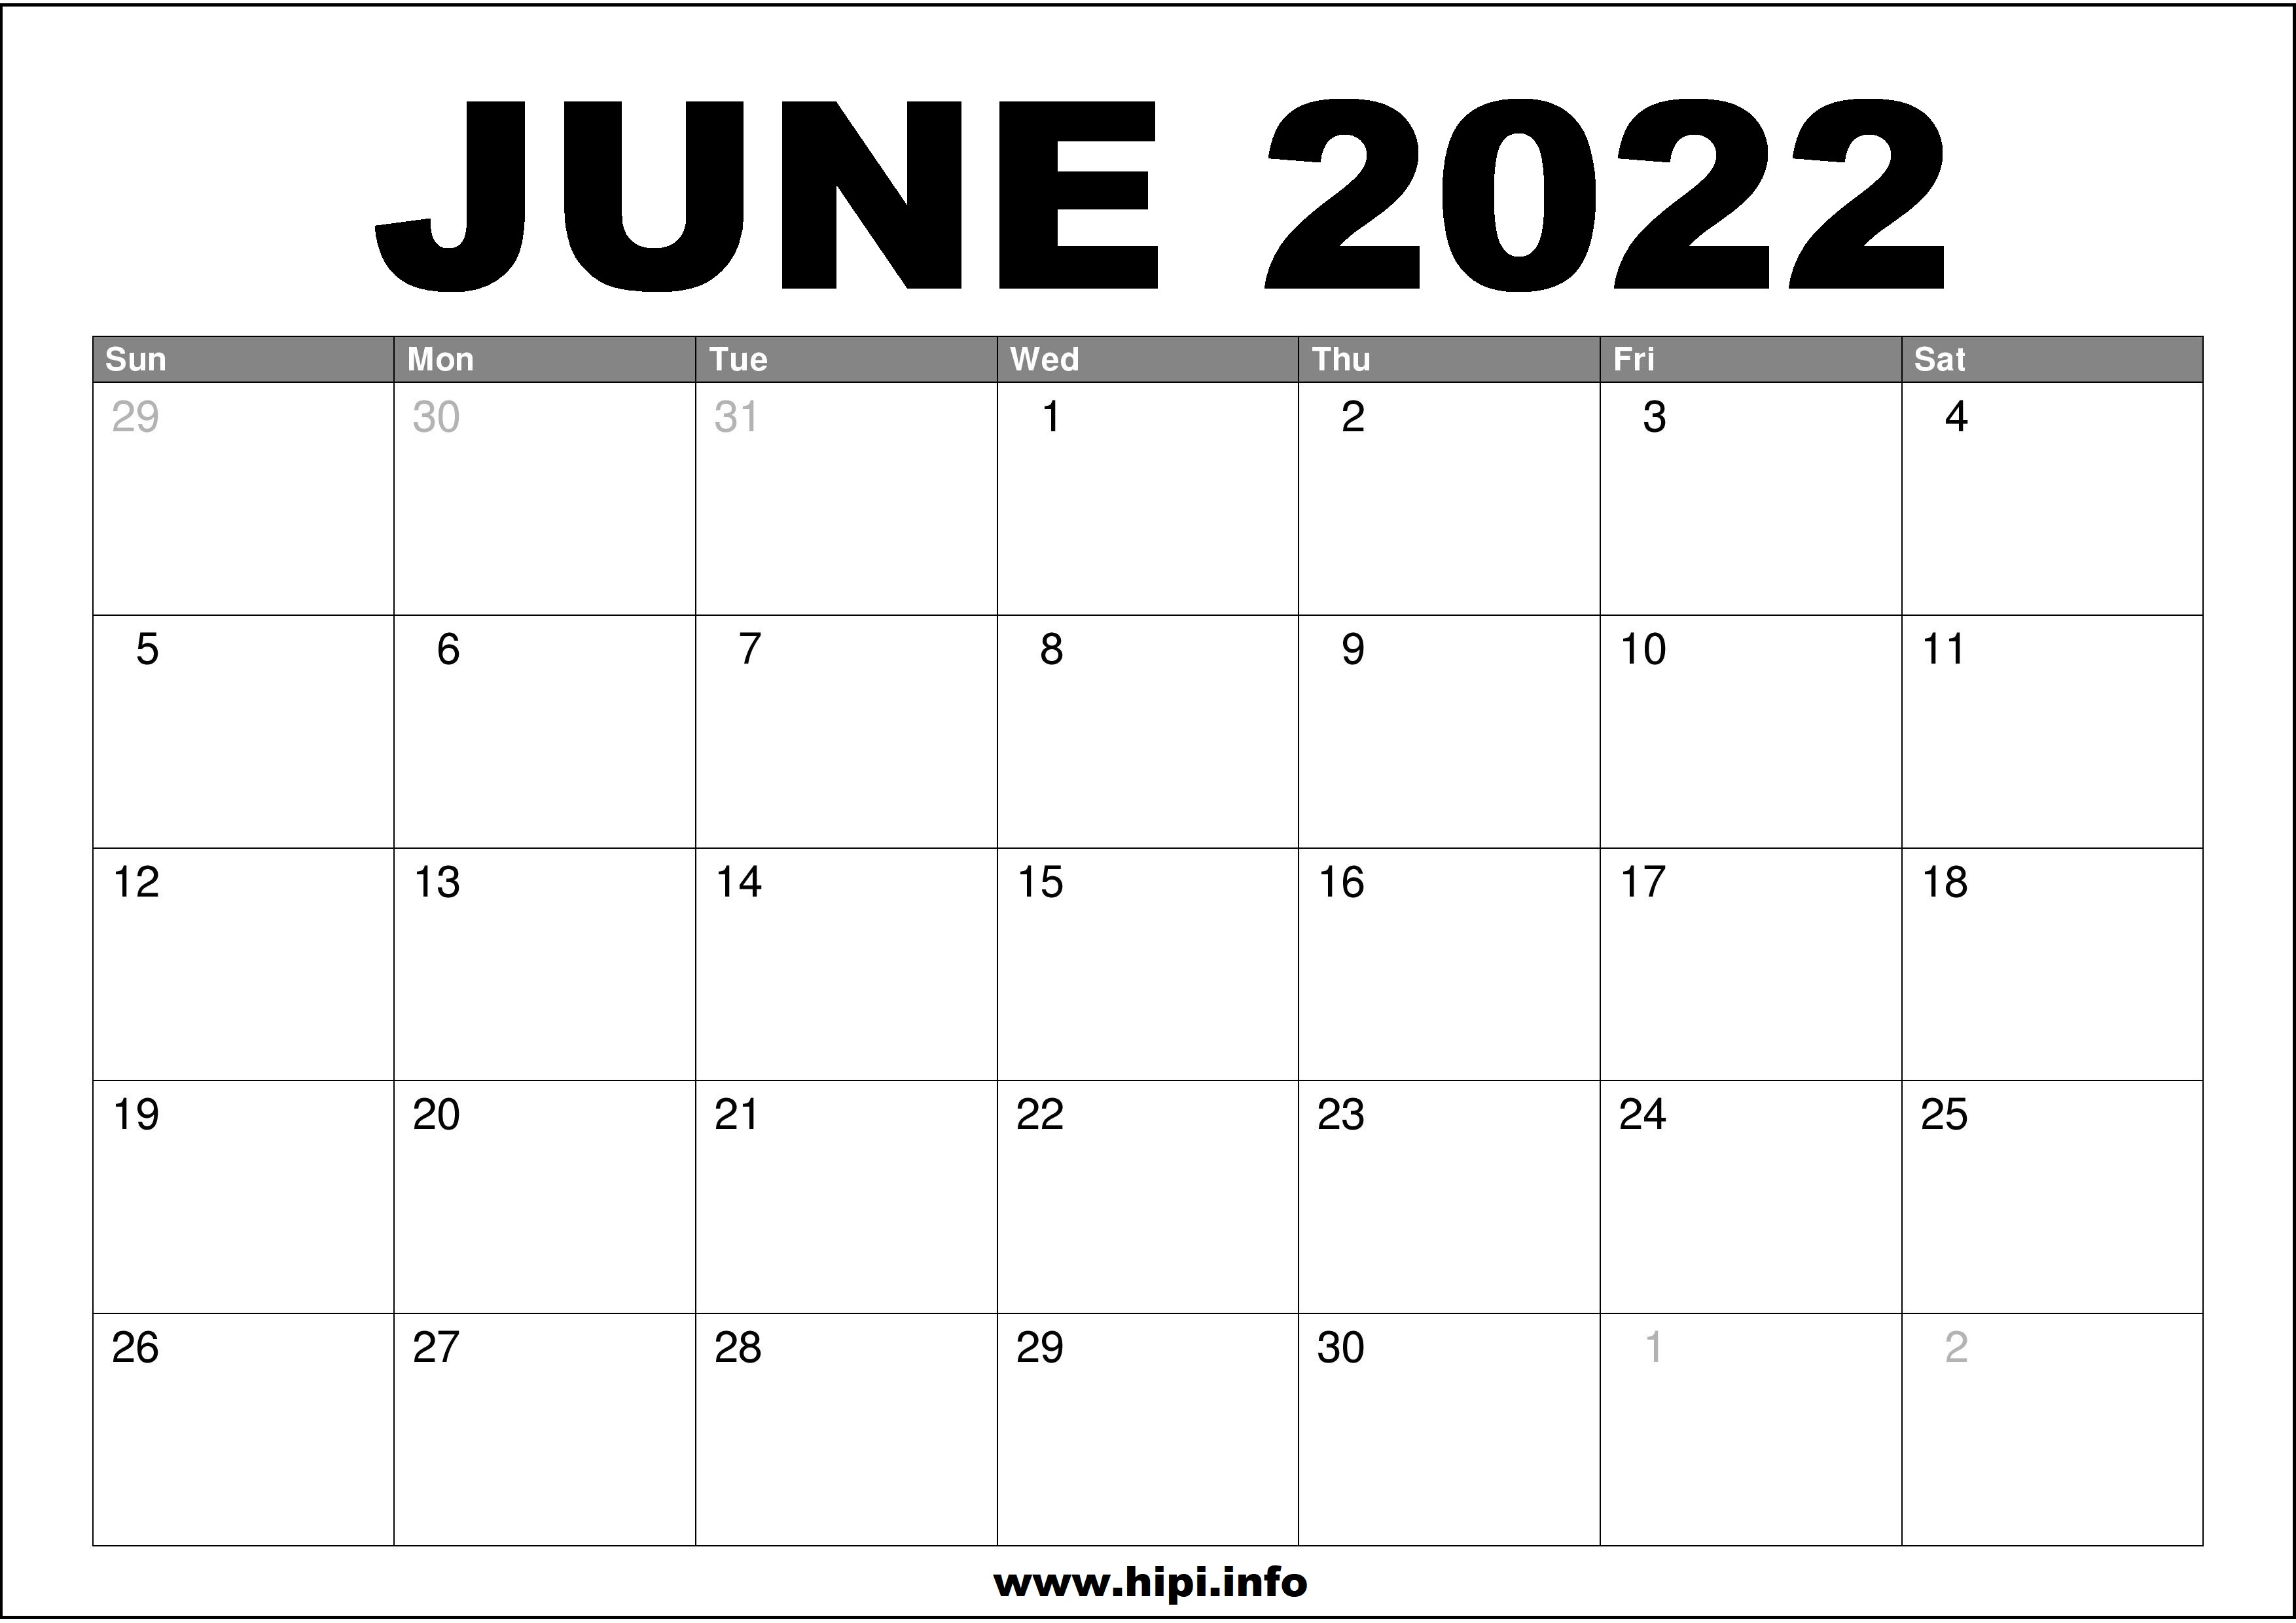 Month Of June 2022 Calendar June 2022 Calendar Printable Free - Hipi.info | Calendars Printable Free